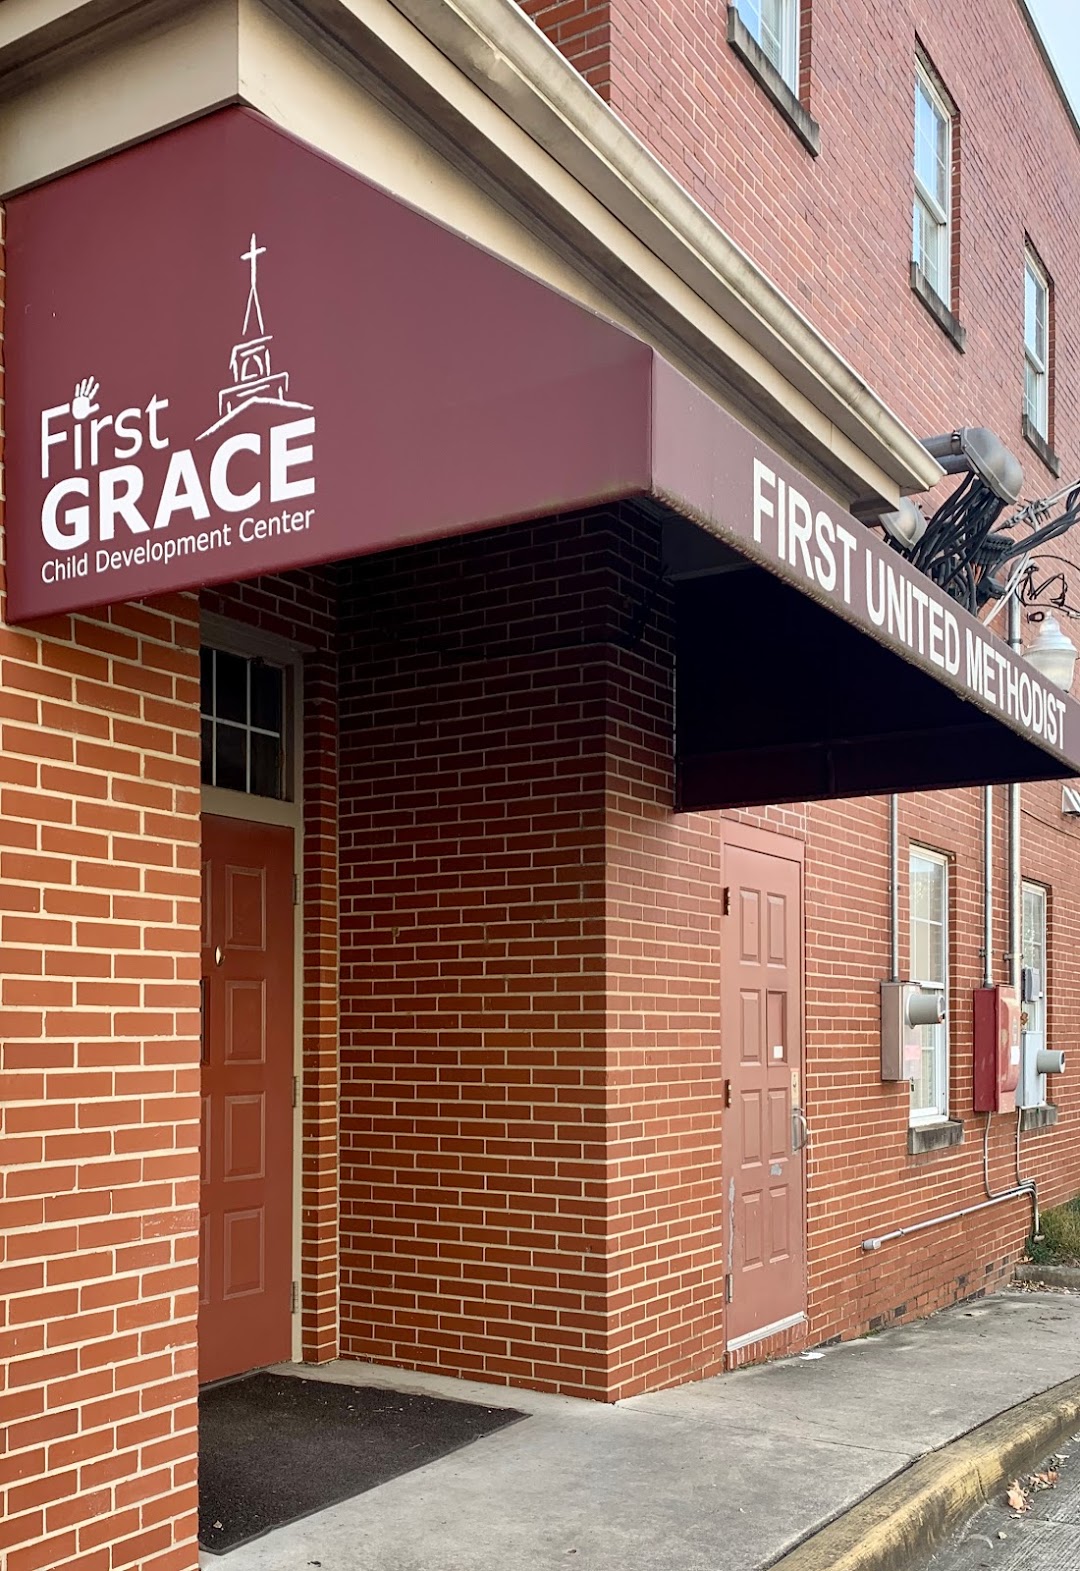 First Grace Child Development Center